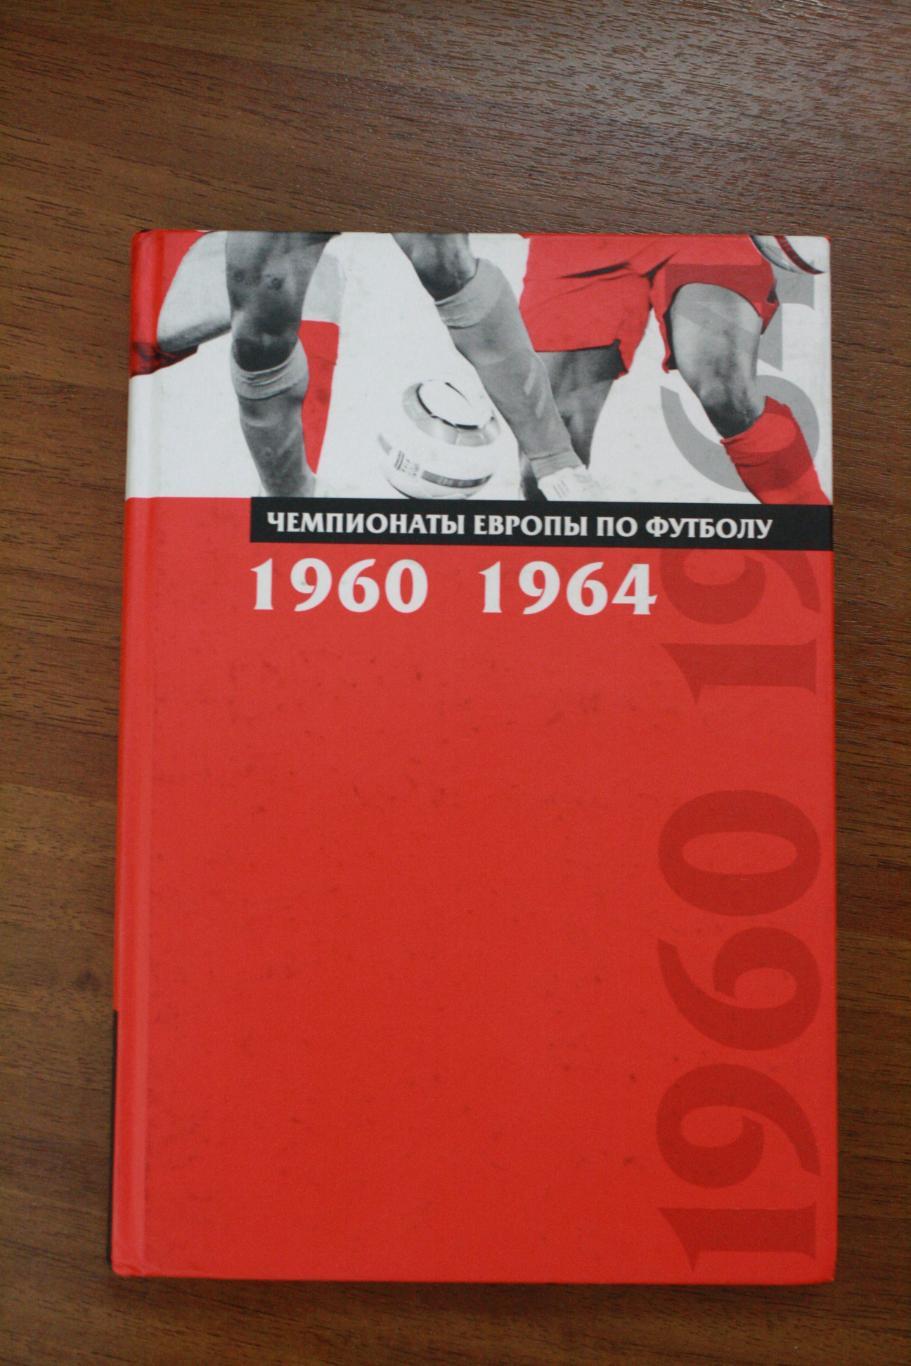 Сточик, Затравкин - Чемпионаты Европы по футболу выпуск 1, 1960-1964